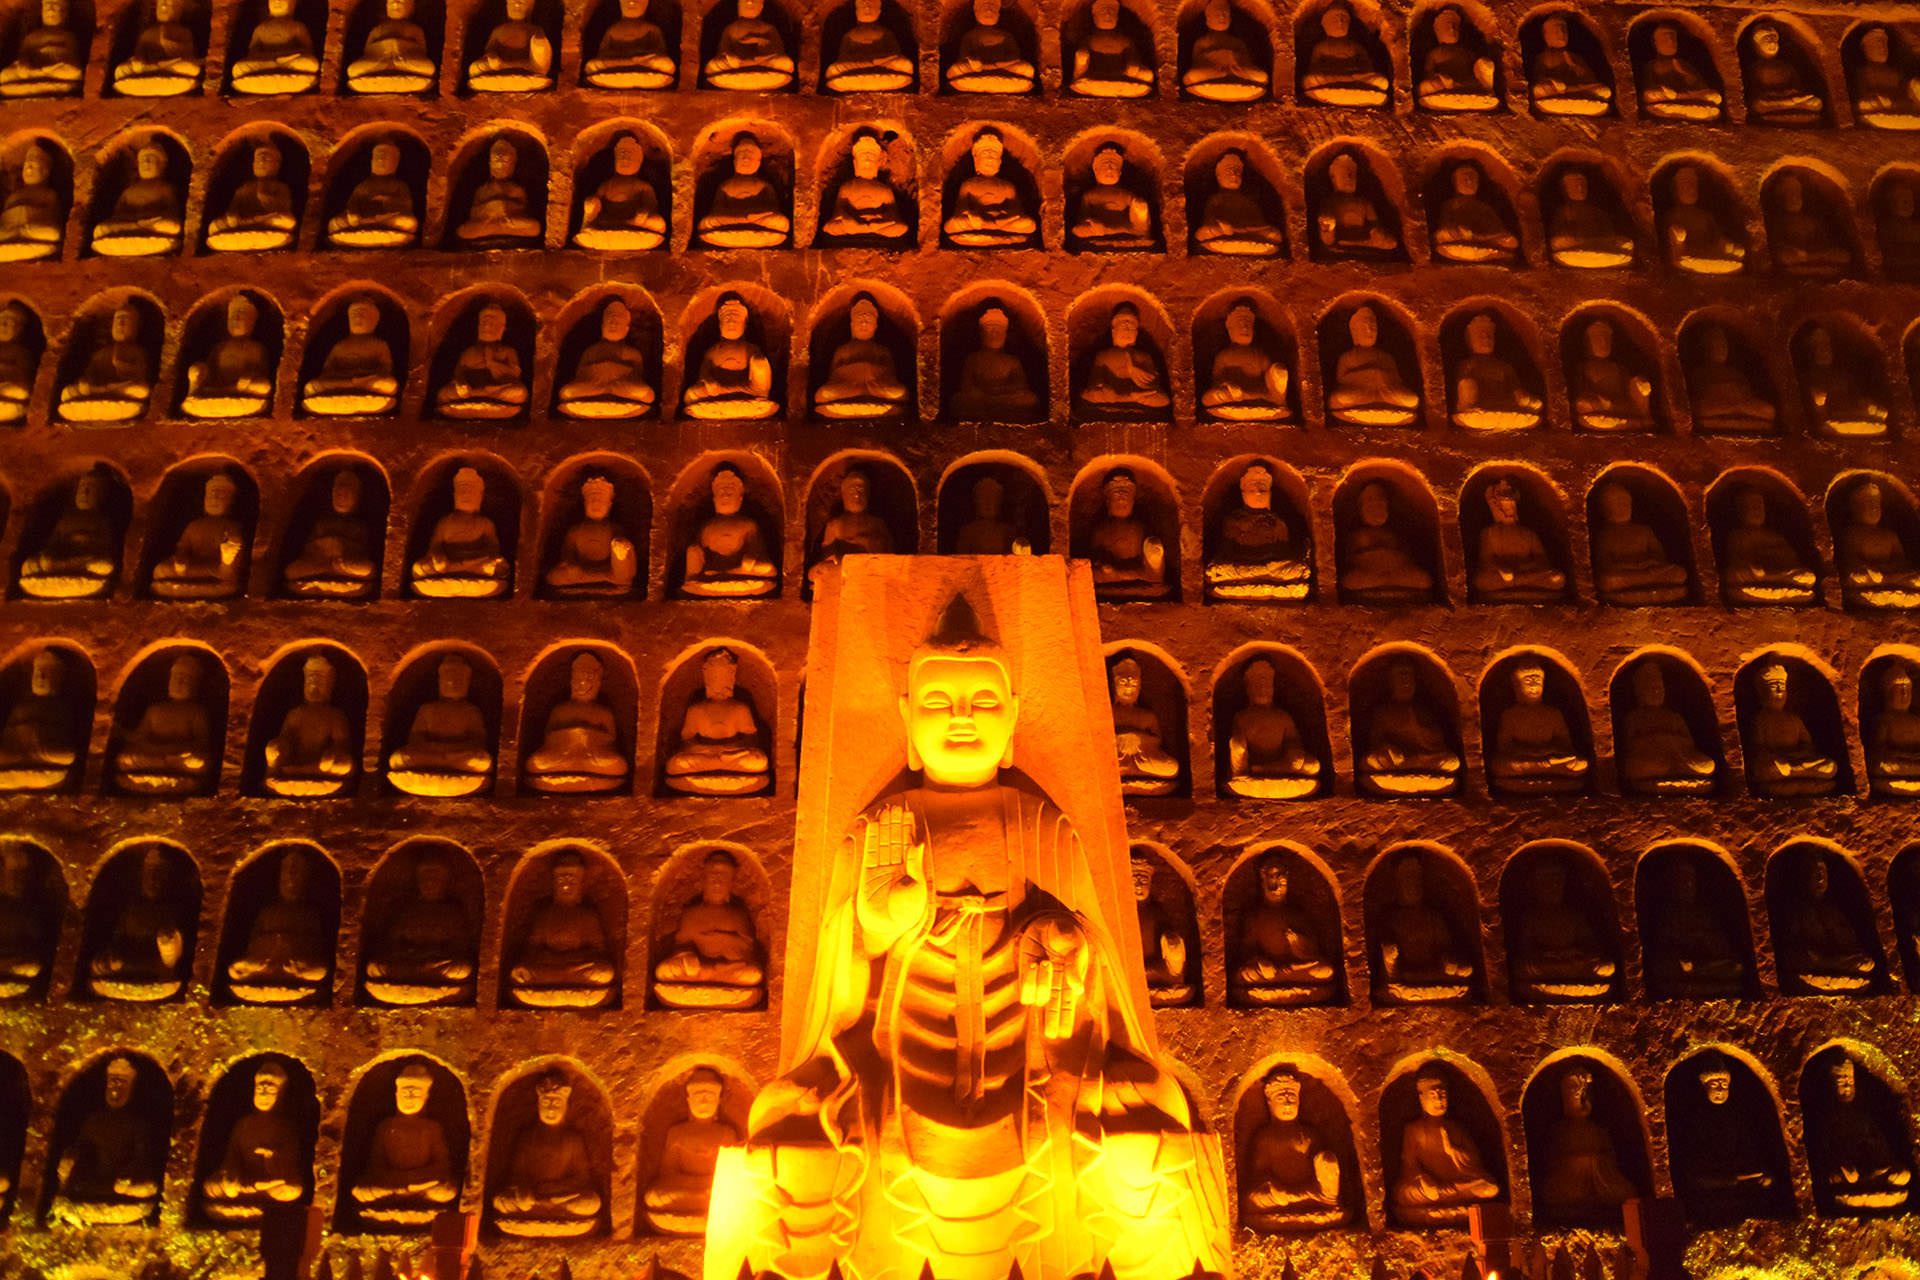 מאות פסלי בודהה בגדלים שונים חצובים בפארק הבודהה האוריינטלי (צילום: טל ניצן)